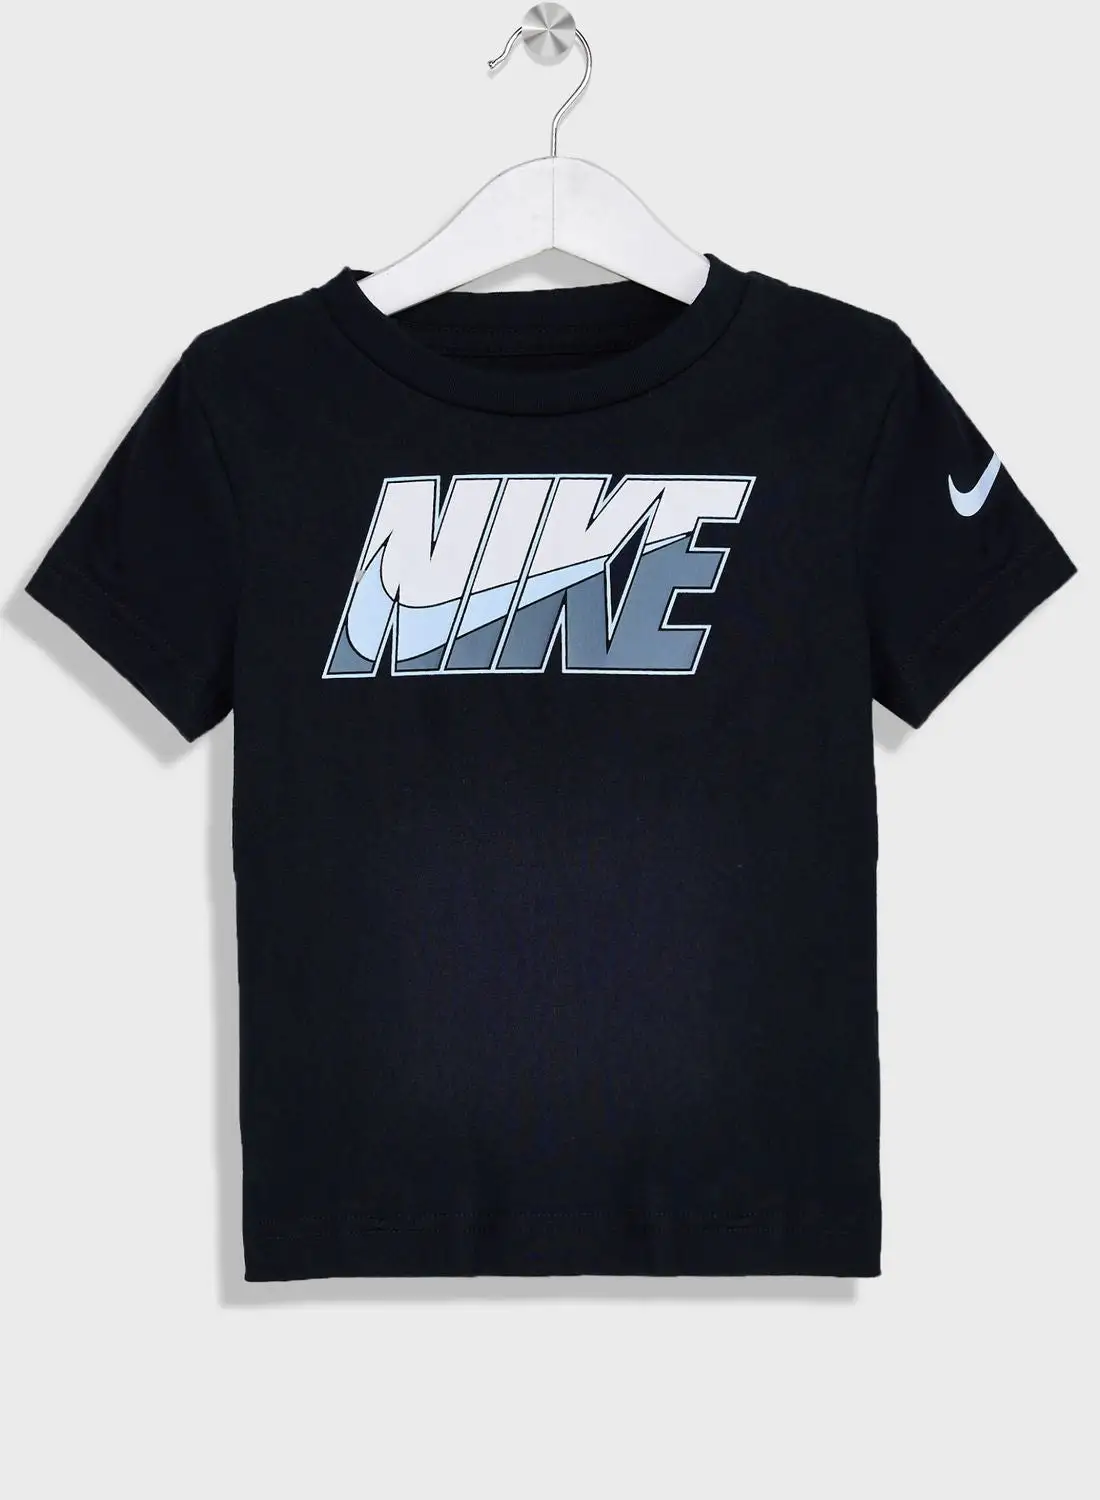 Nike Metallic Block T-Shirt